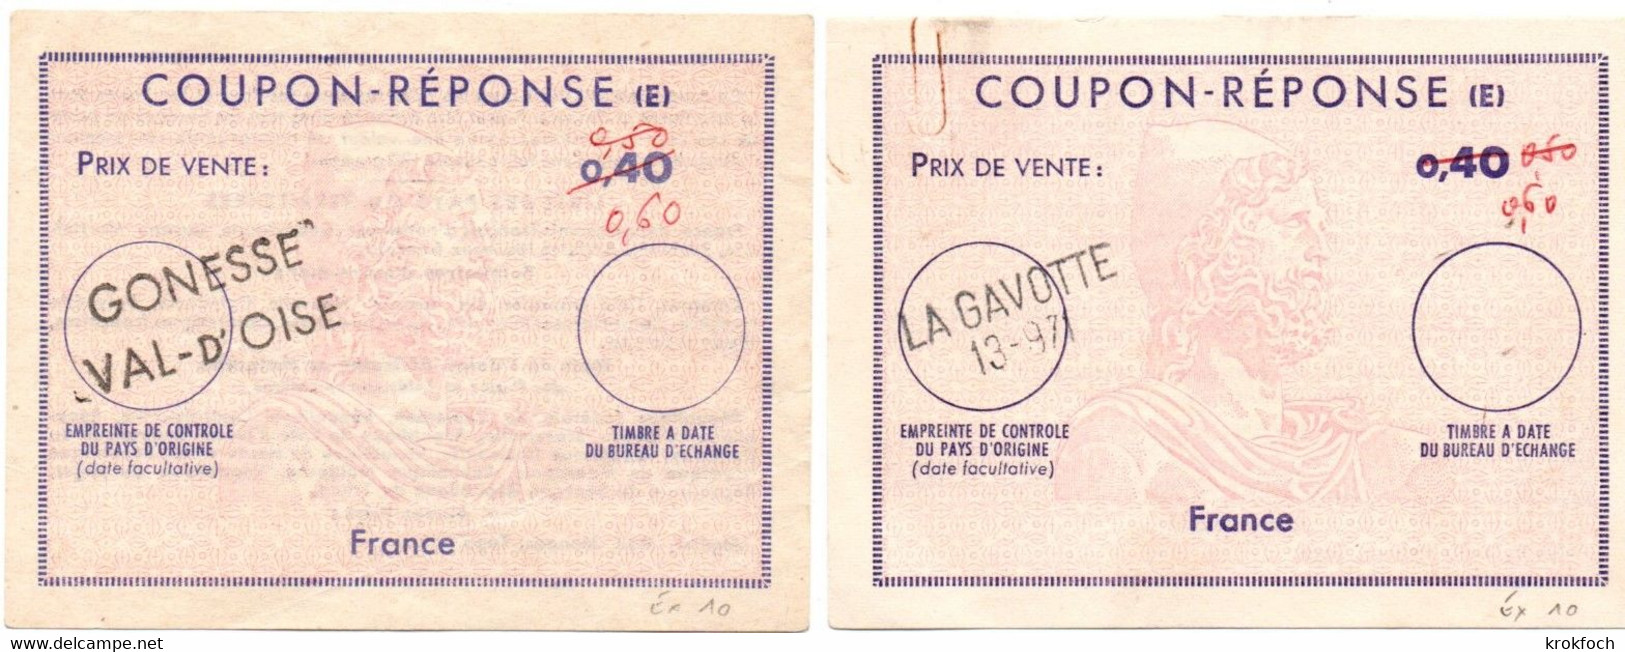 France - 2 Coupon-réponse Type Ex 10 - Griffe La Gavotte 13-971 & Gonesse Val D'Oise - IAS CRI IRC - Reply Coupons